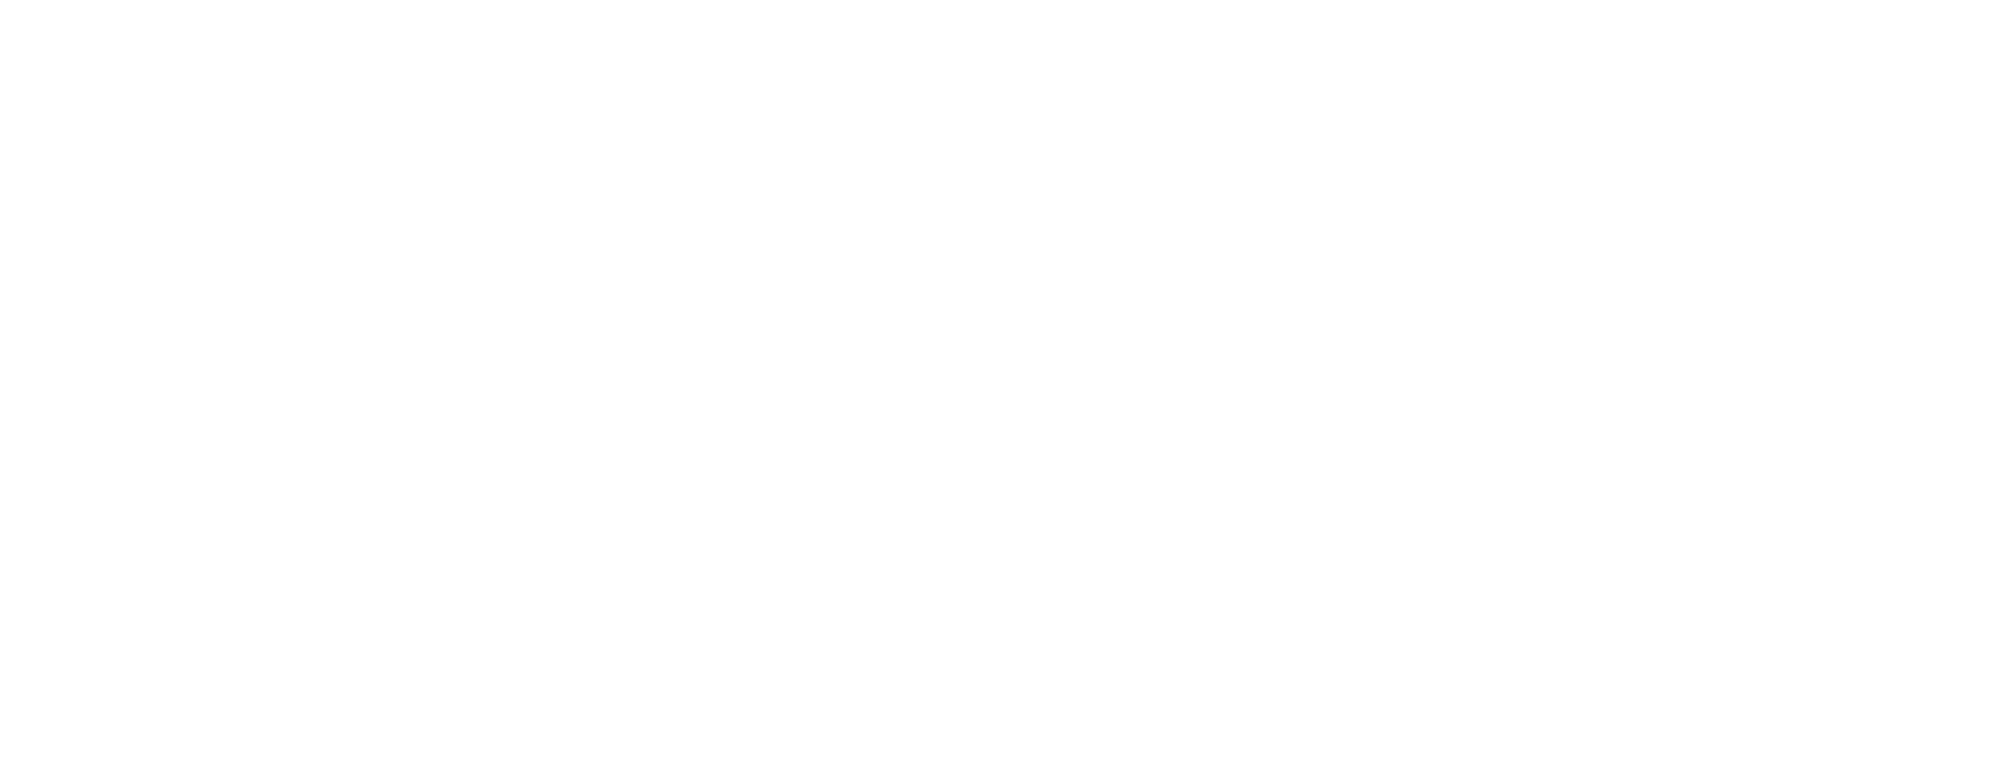 AAHHH